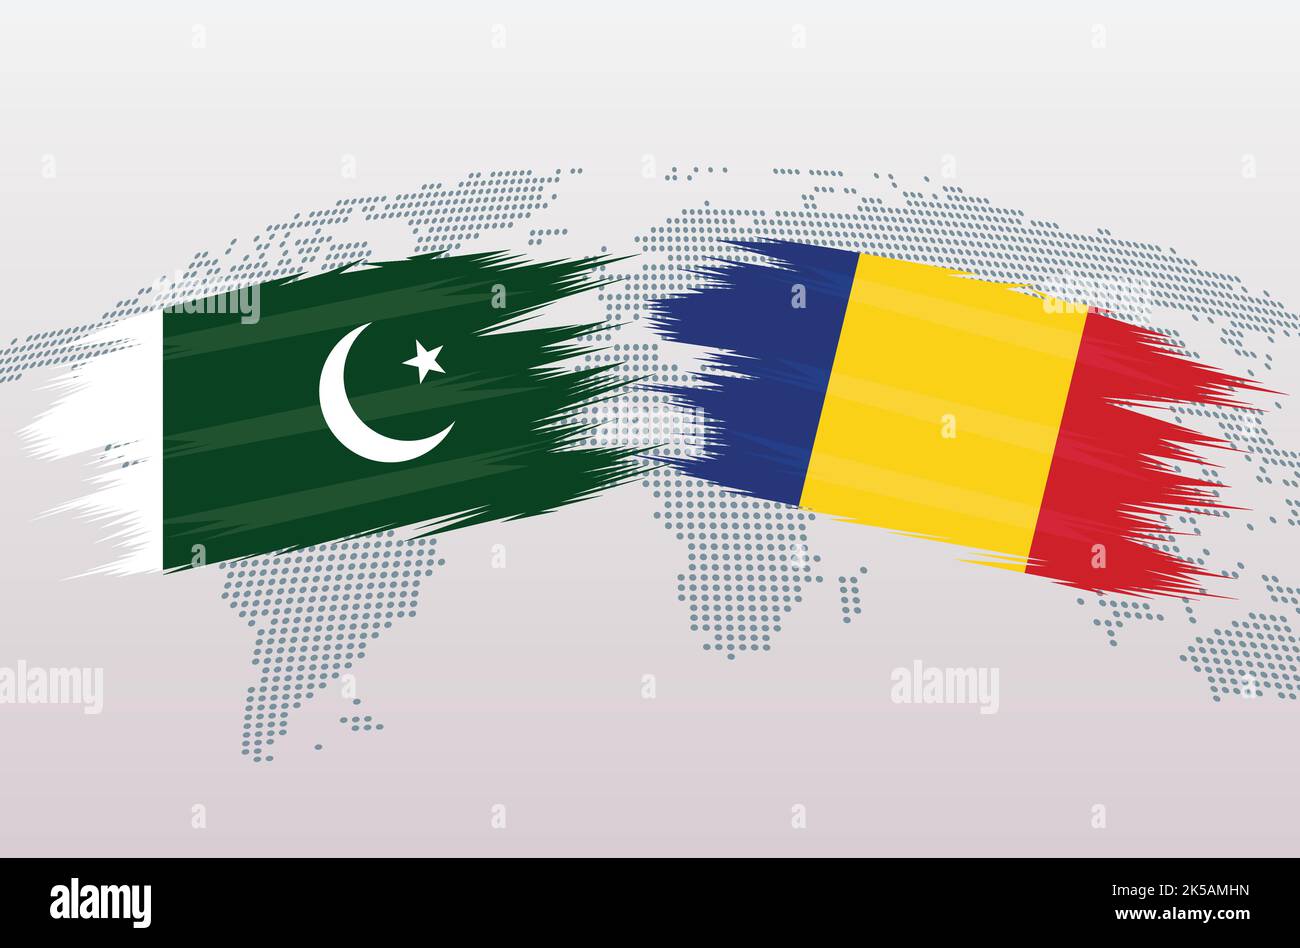 Bandiere Pakistan vs Romania. Bandiere della Repubblica islamica del Pakistan contro la Romania, isolate su sfondo grigio della mappa del mondo. Illustrazione vettoriale. Illustrazione Vettoriale